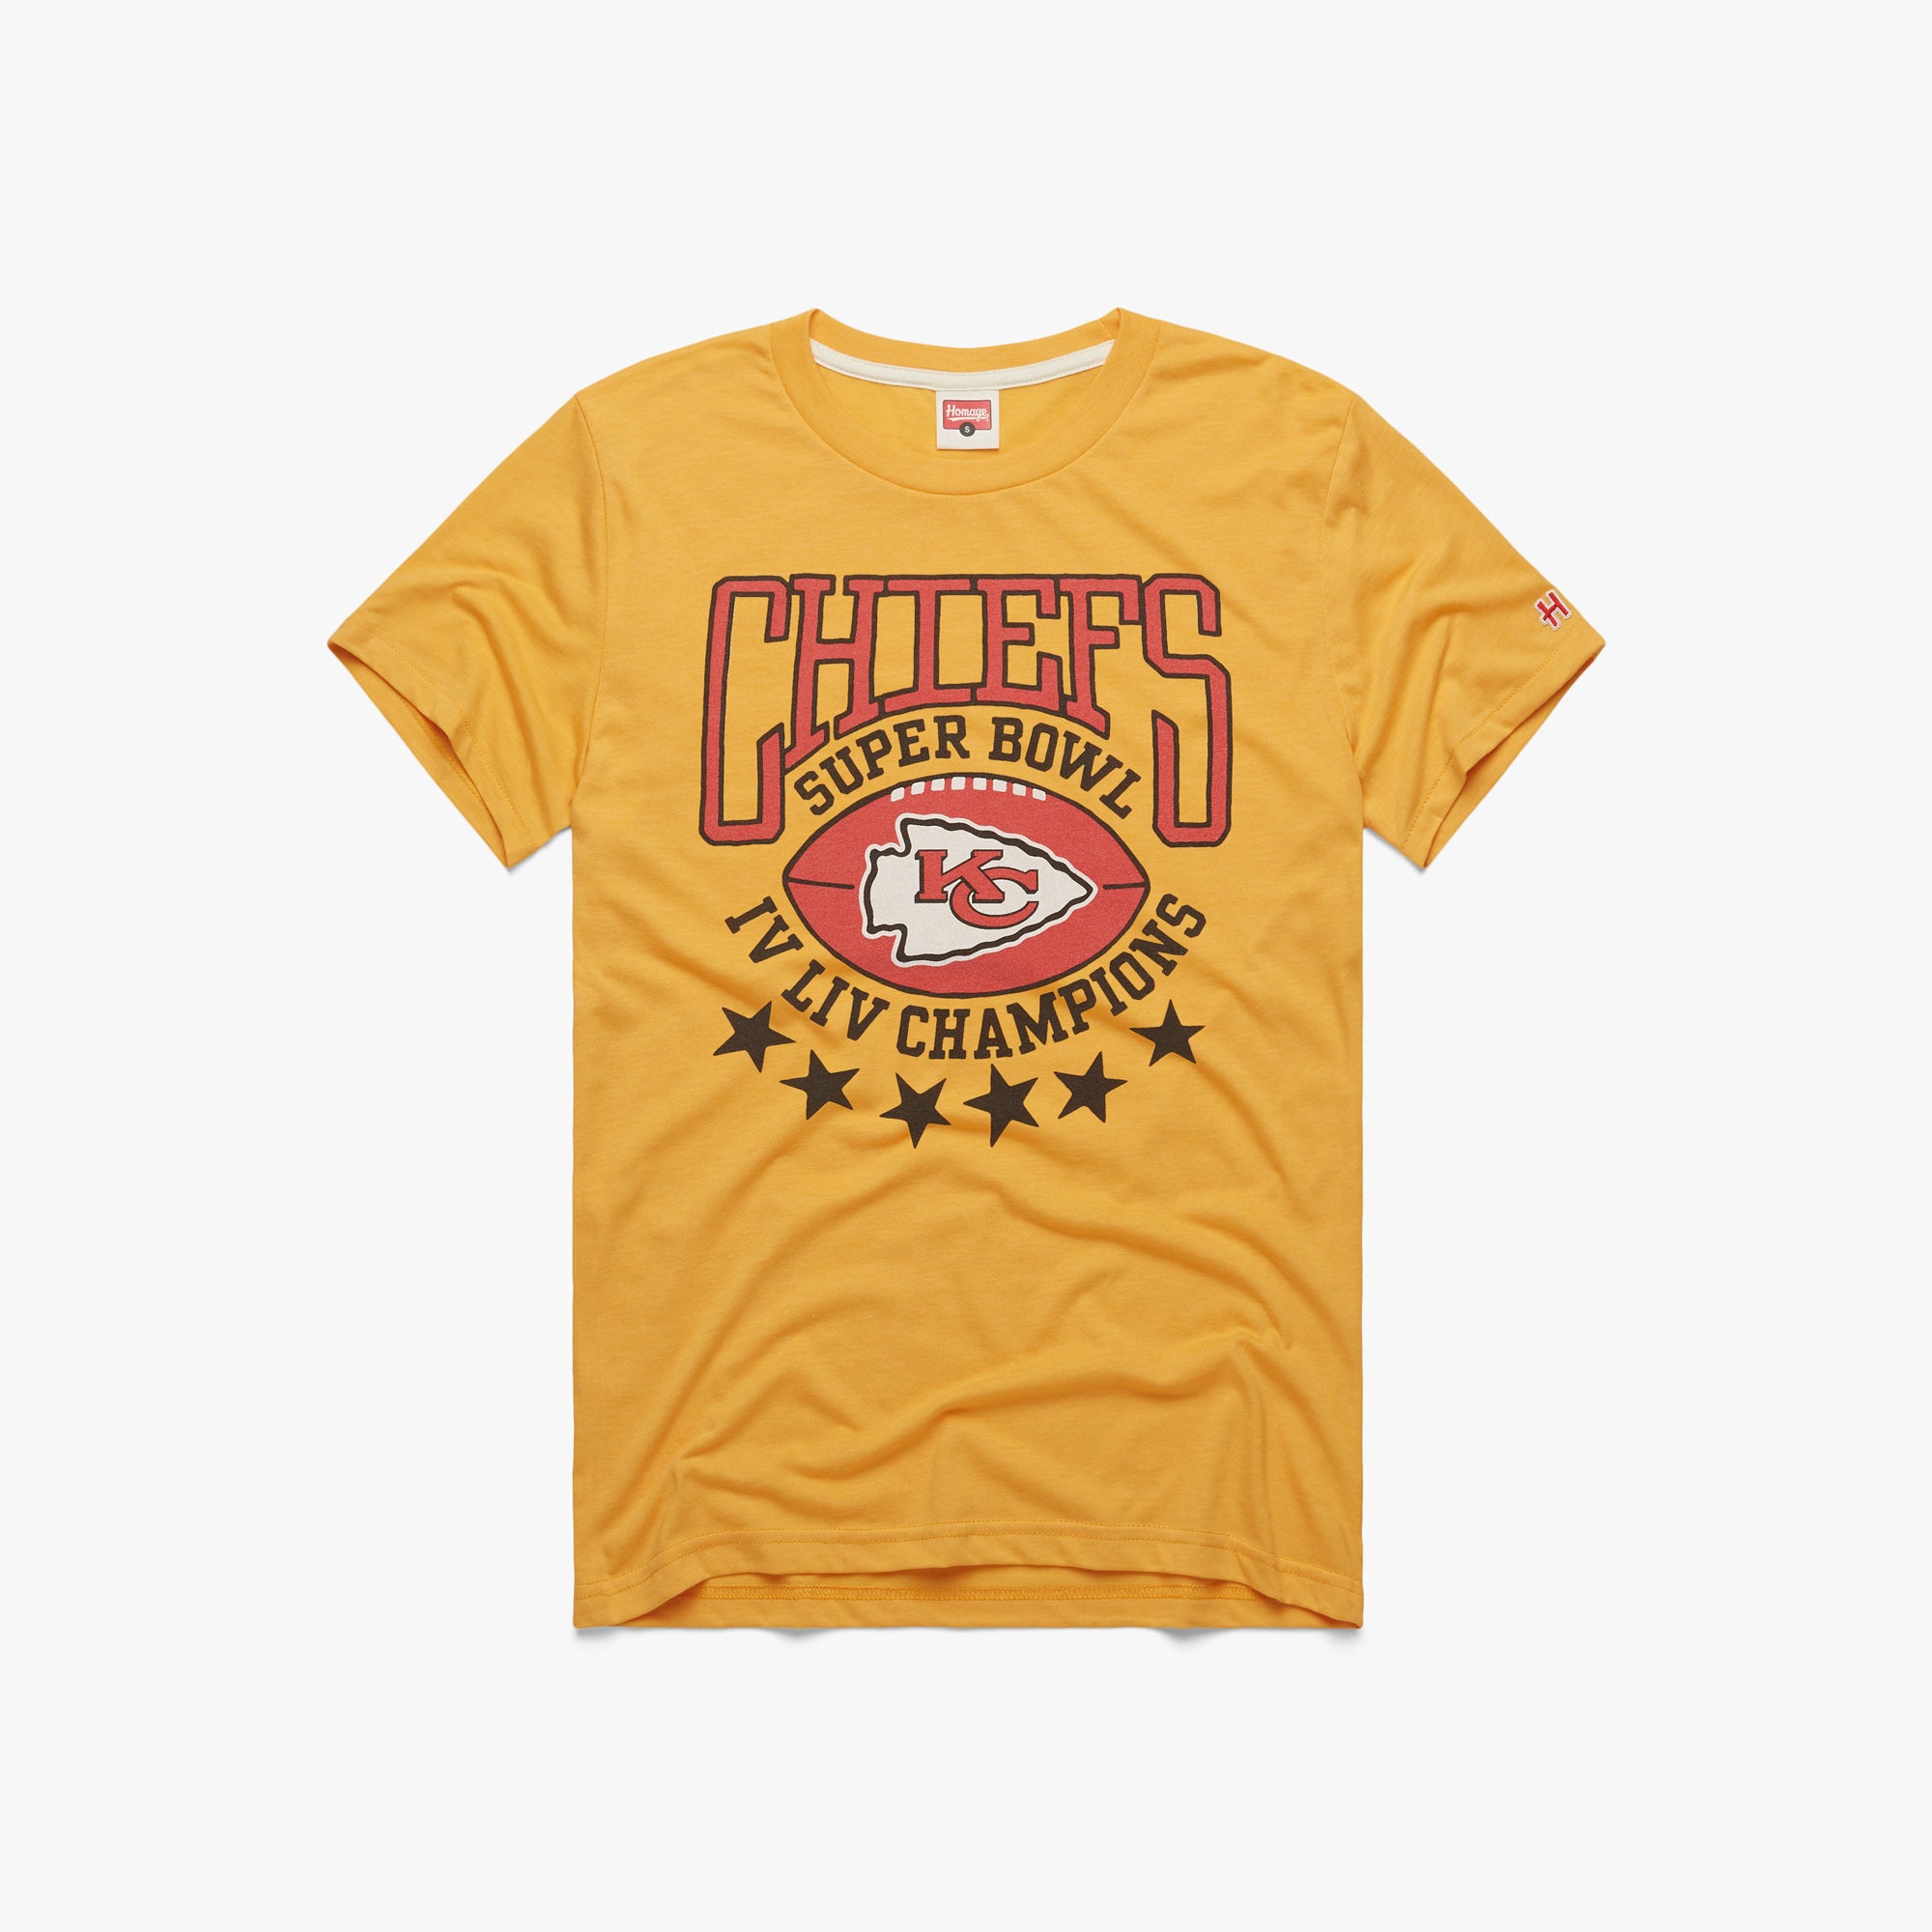 Super Bowl Kansas City Chiefs NFL Jerseys for sale